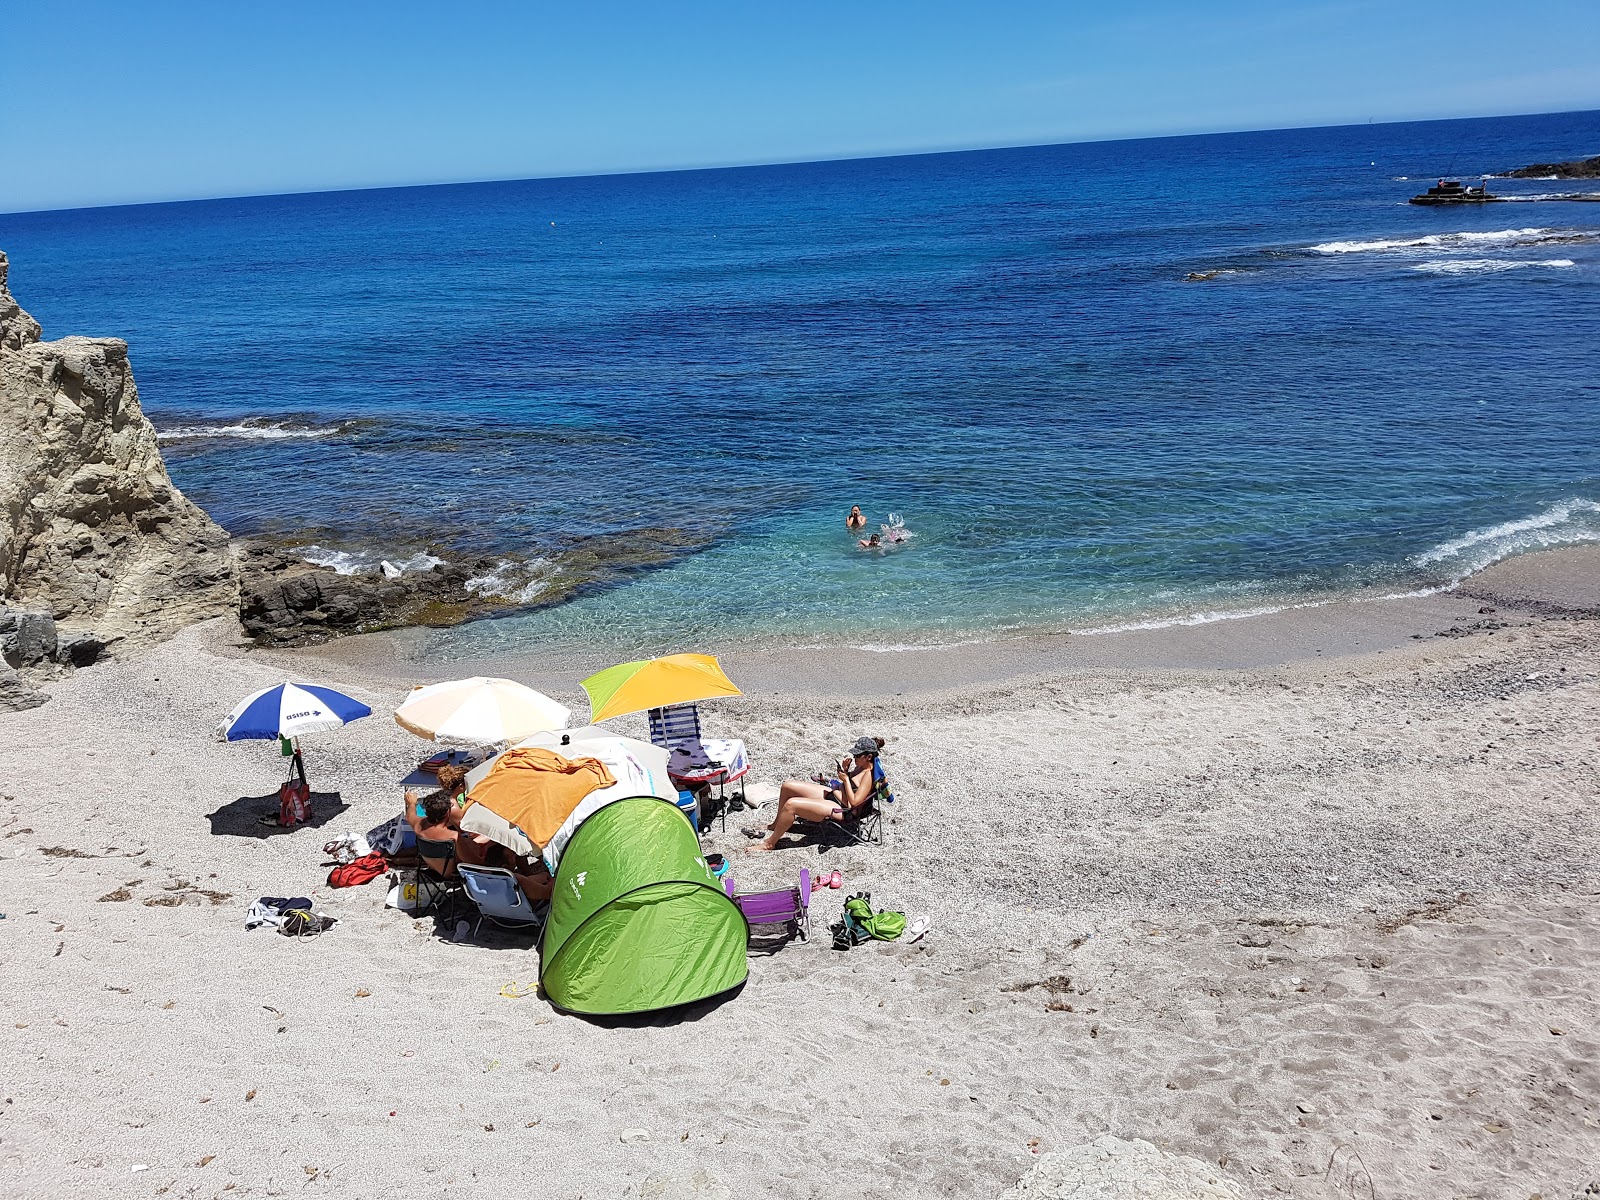 Photo of La isleta beach with tiny bay